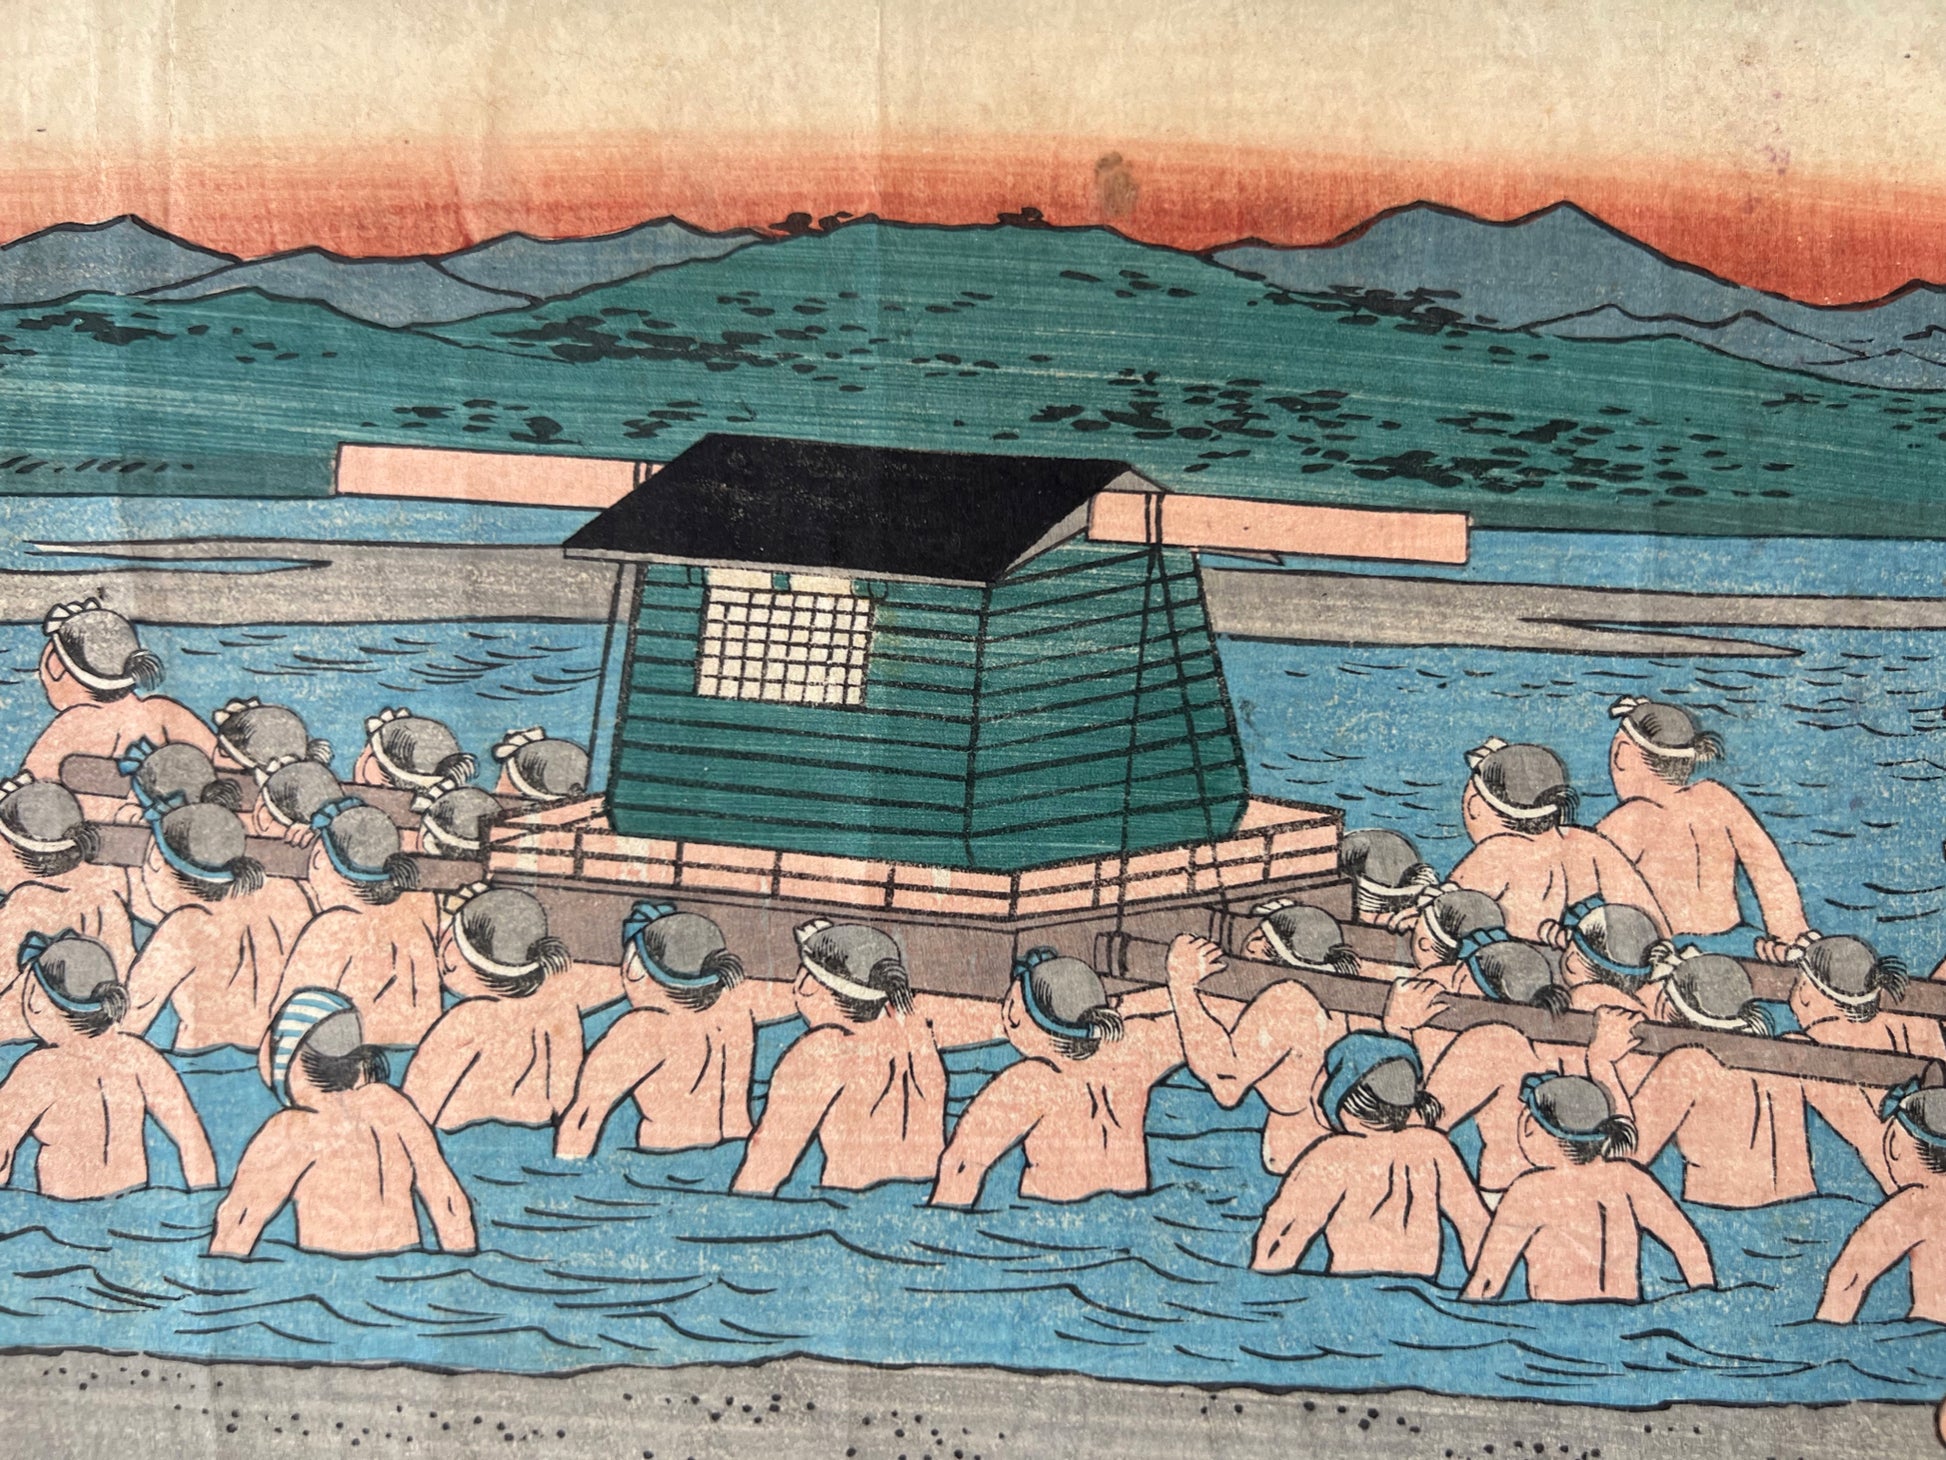 estampe japonaise traversée de rivière par femmes en kimono et leurs porteurs, palanquin vert et montagne